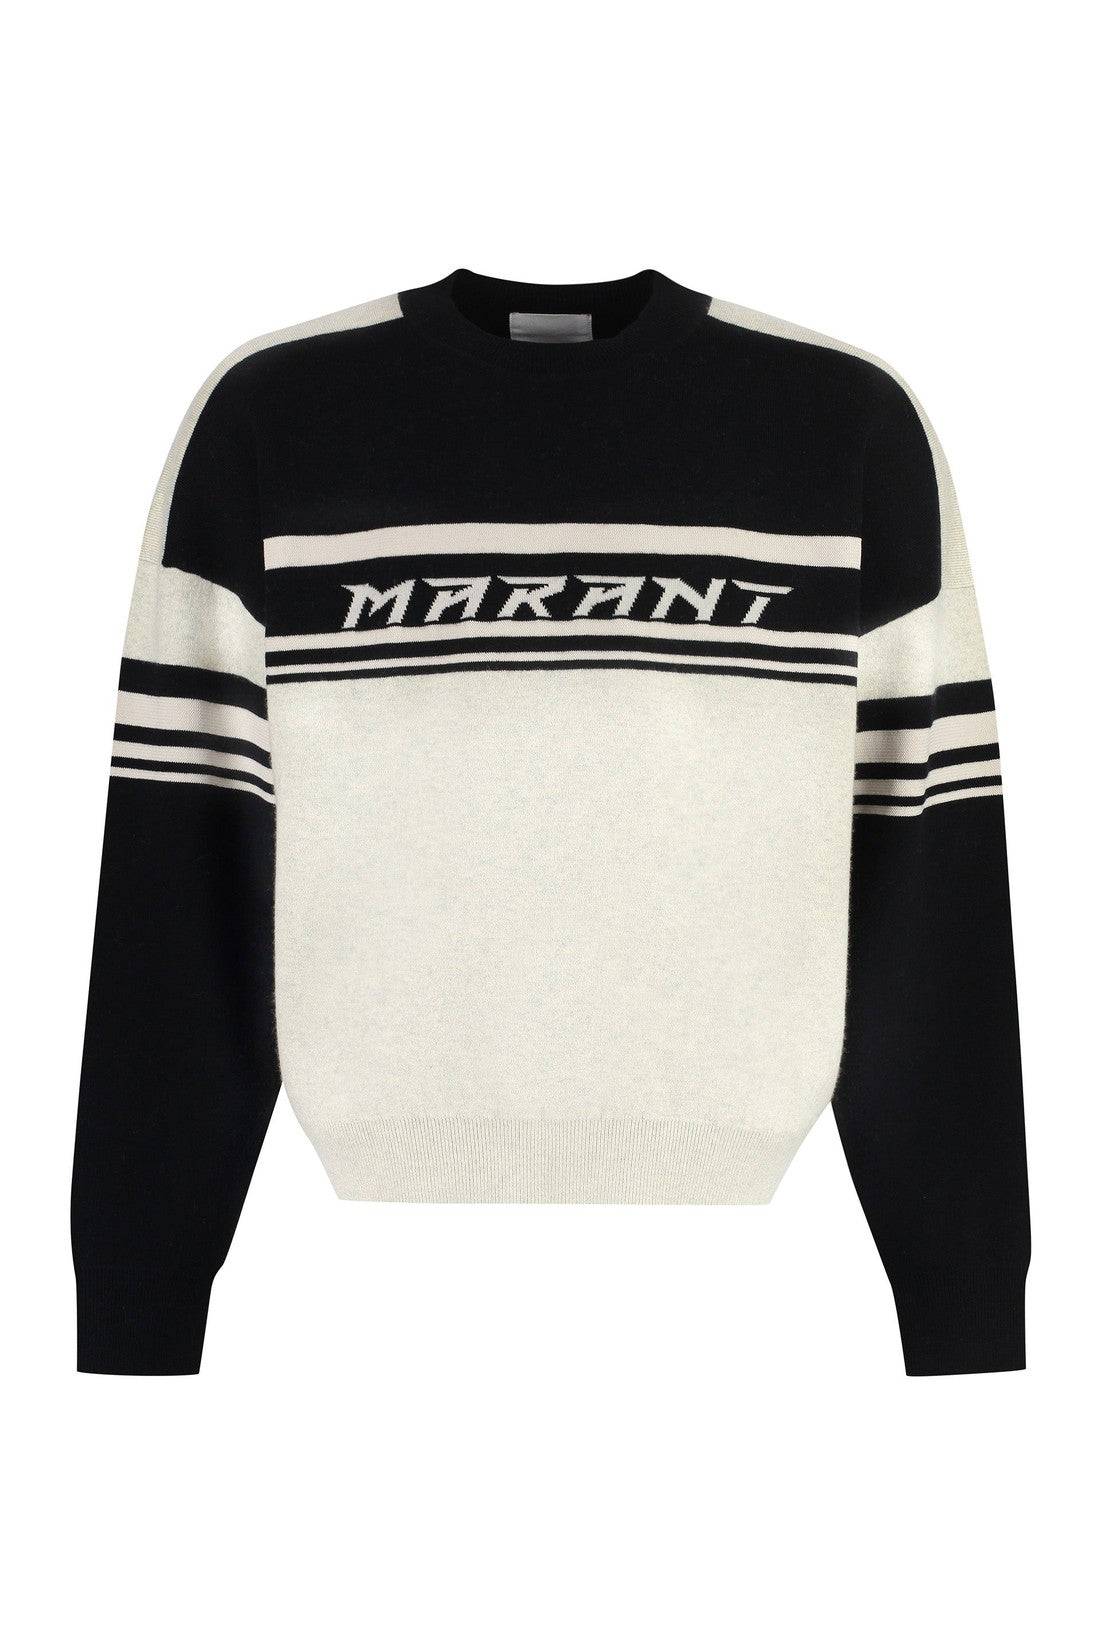 Marant-OUTLET-SALE-Cotton blend crew-neck sweater-ARCHIVIST